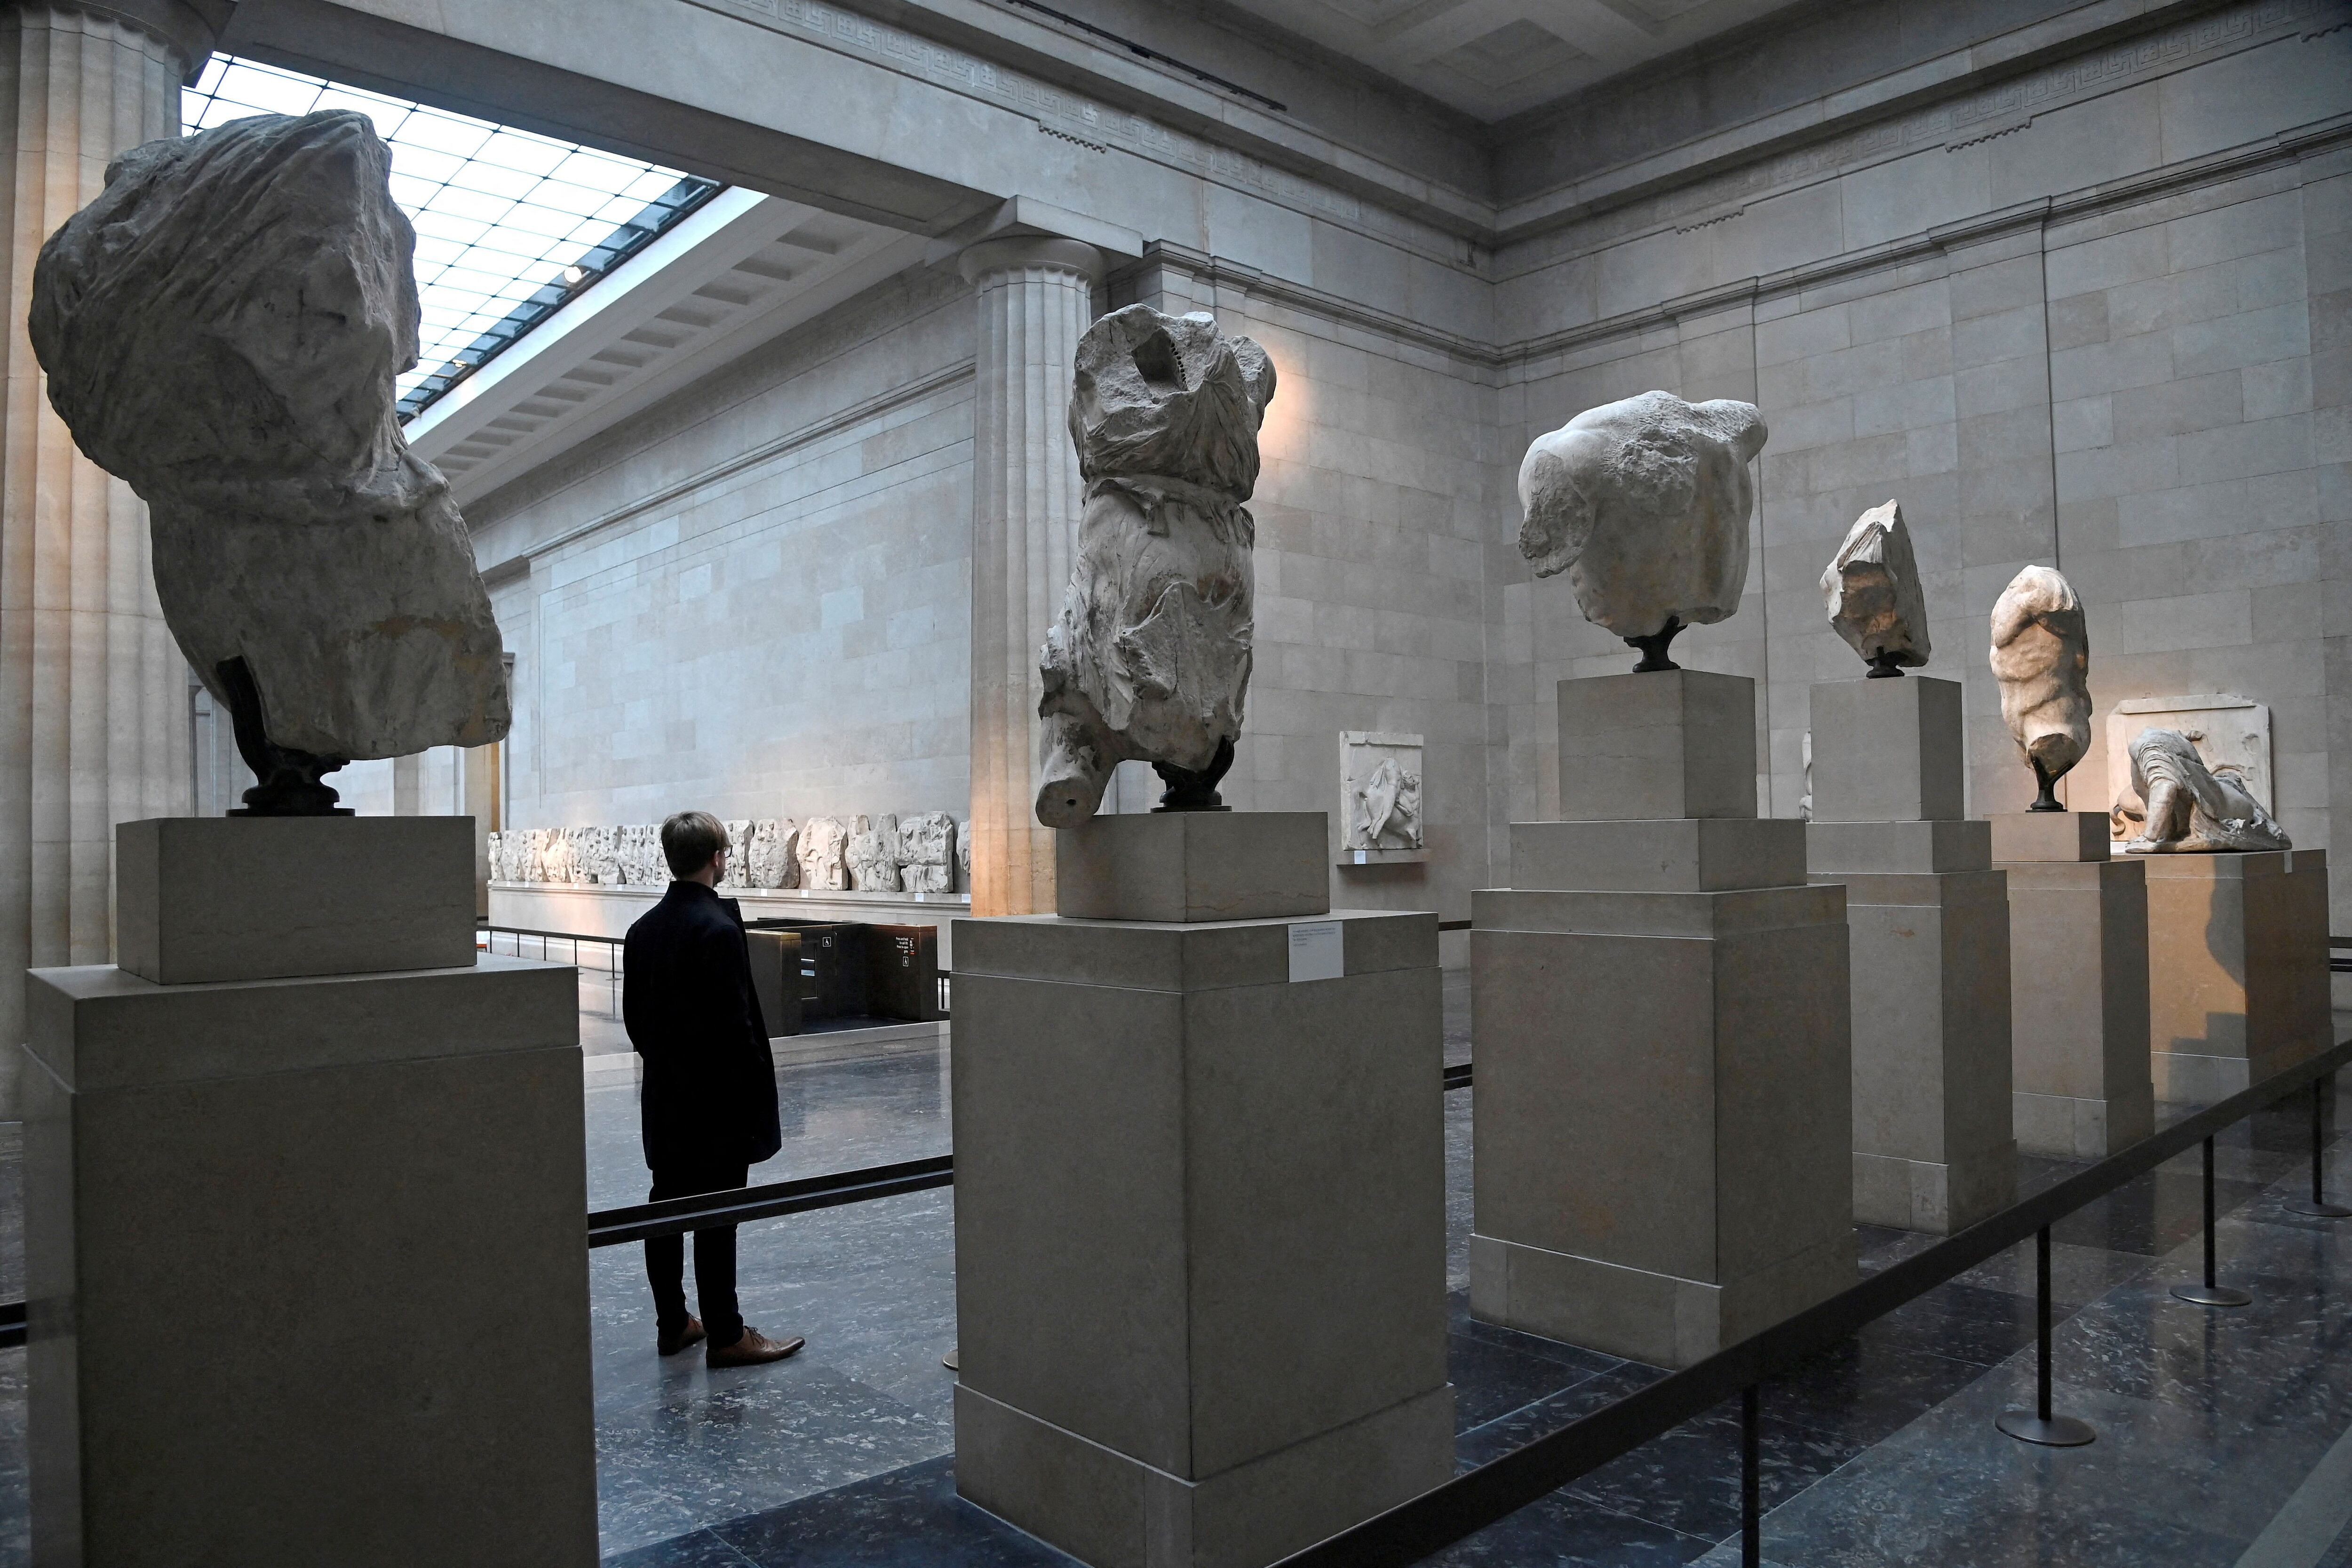 Un empleado observa las esculturas del Partenón, a veces denominadas en el Reino Unido como los Mármoles de Elgin, en exhibición en el Museo Británico de Londres (REUTERS/Toby Melville)